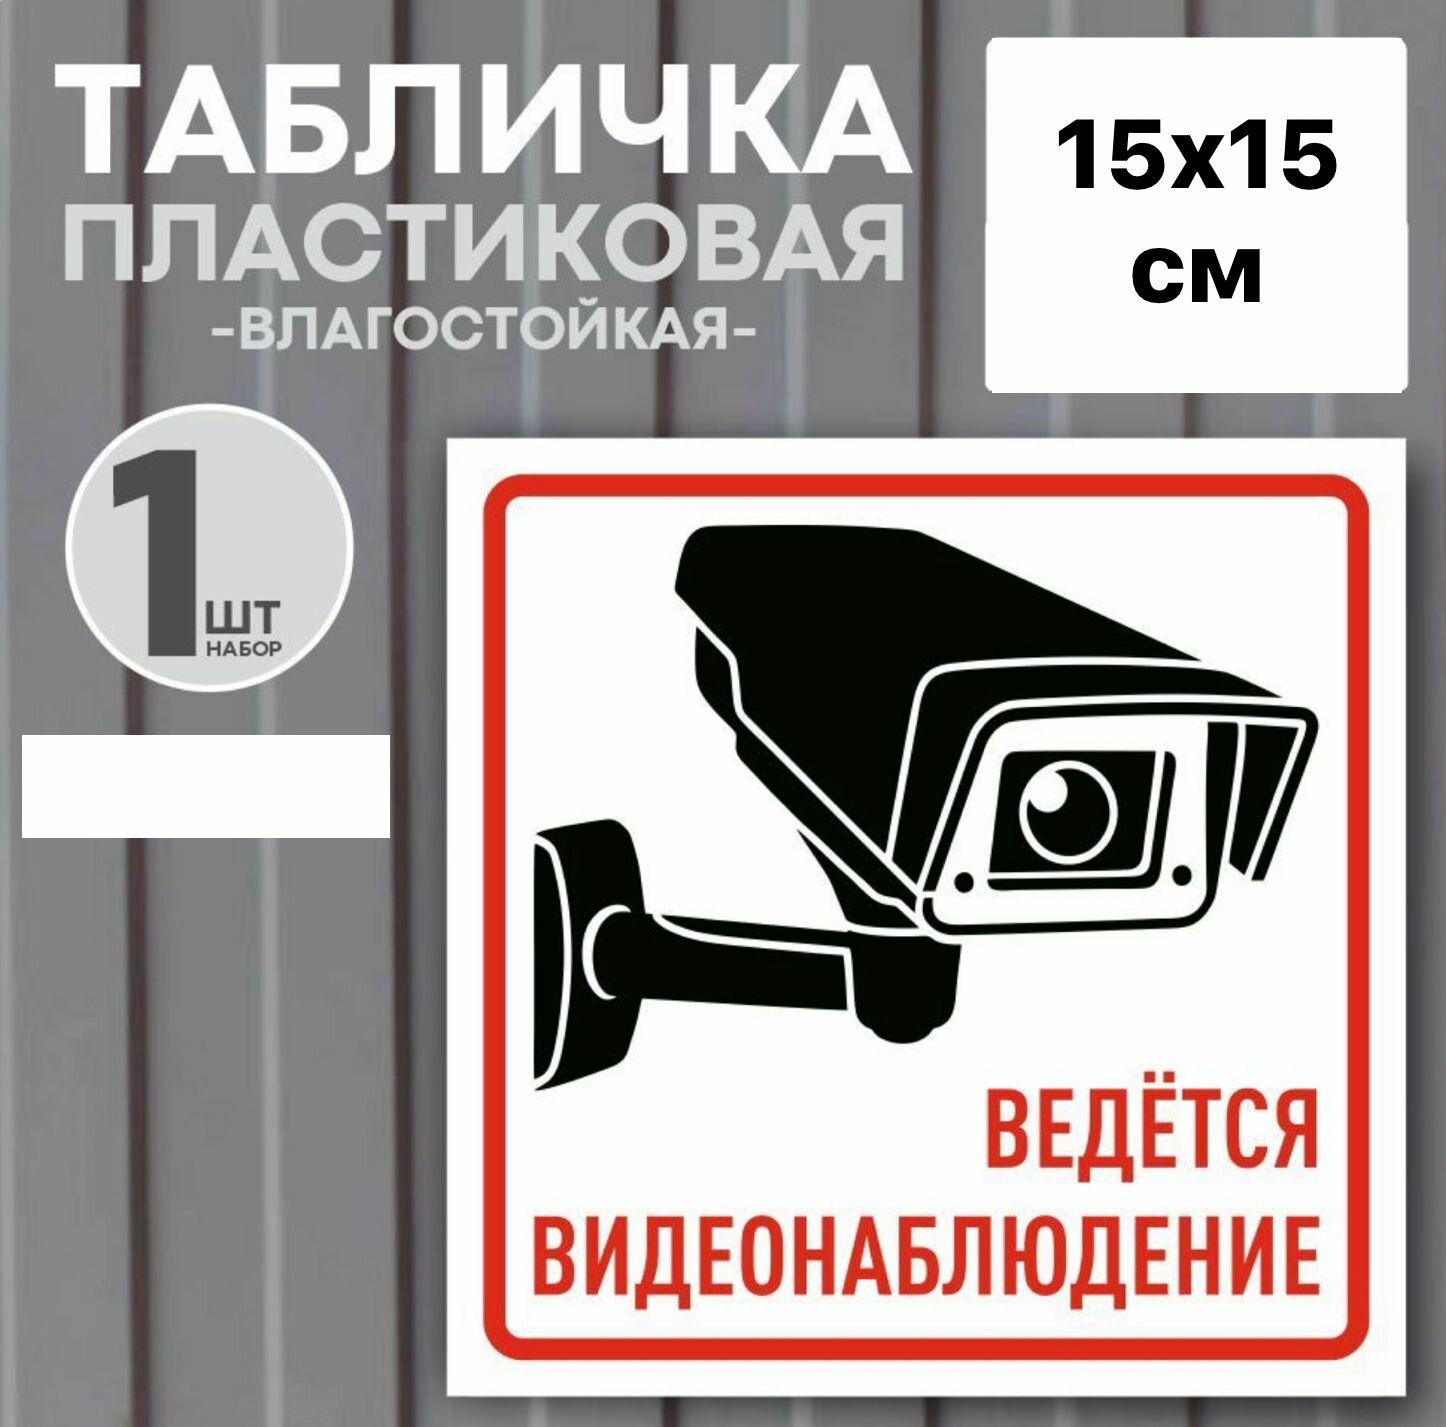 Табличка "Ведется видеонаблюдение", 15х15 см